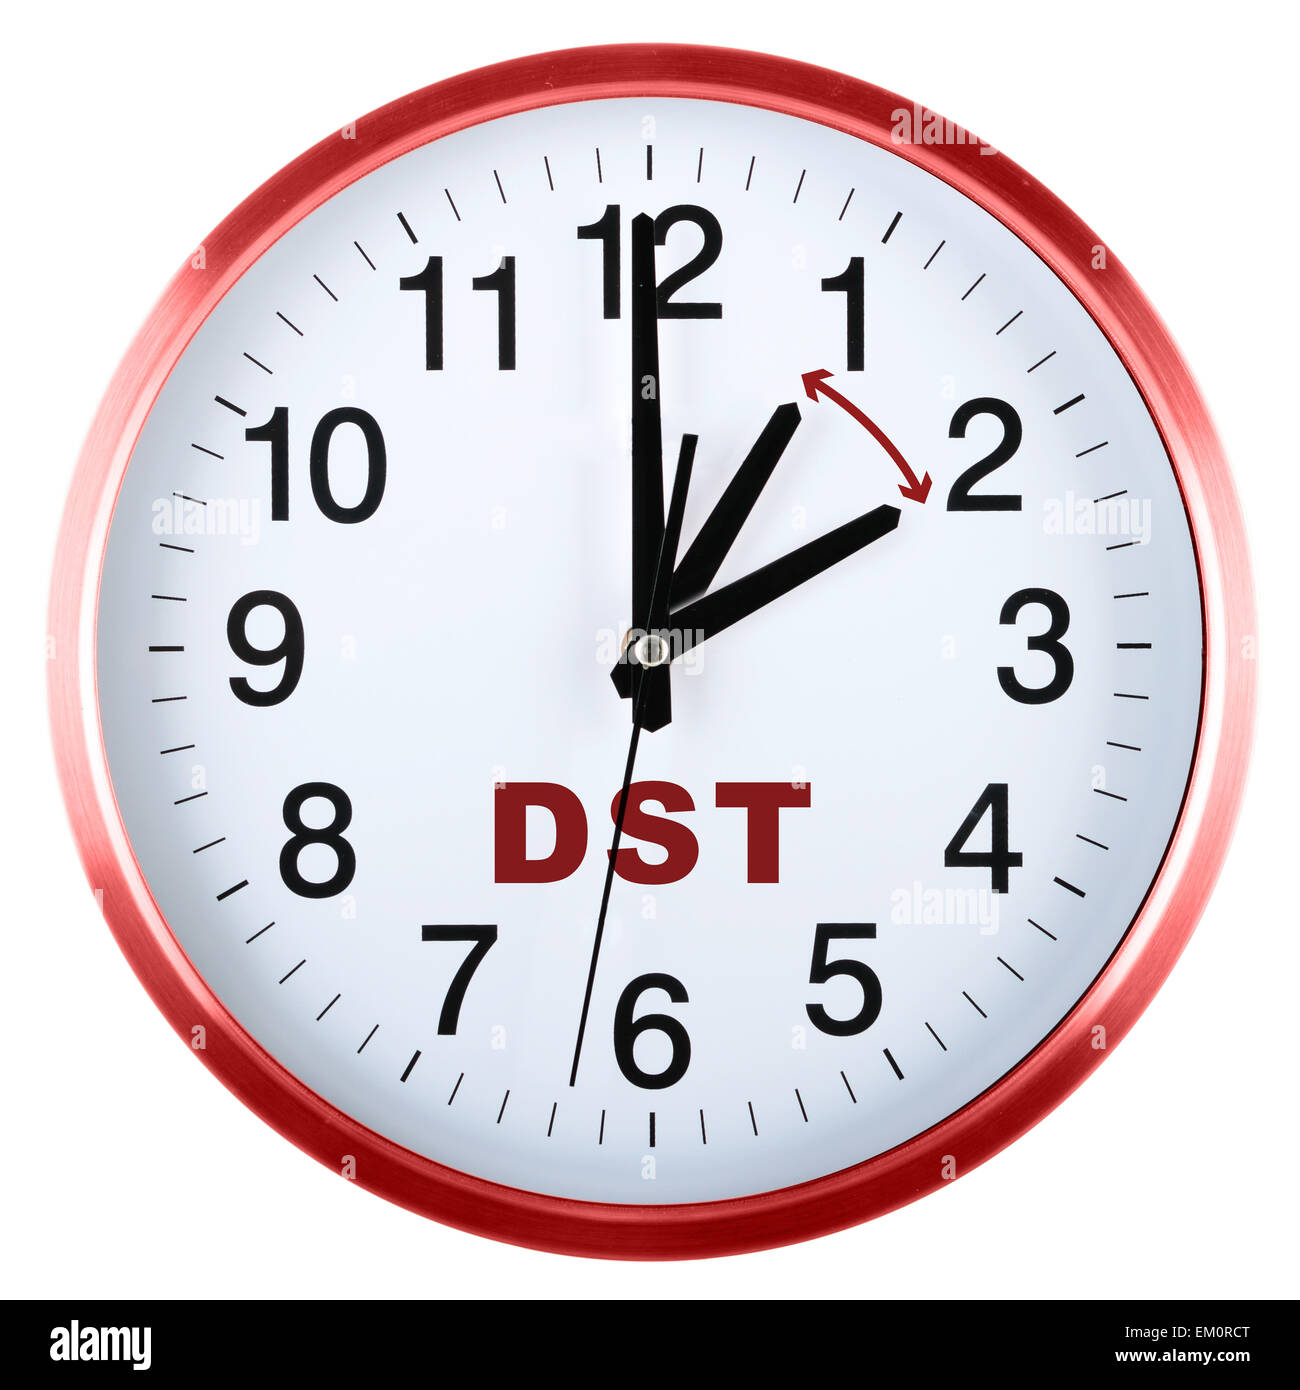 Daylight Saving Time. Change Clock To Summer Time. Stock Image - Image of  lamp, saving: 110689631